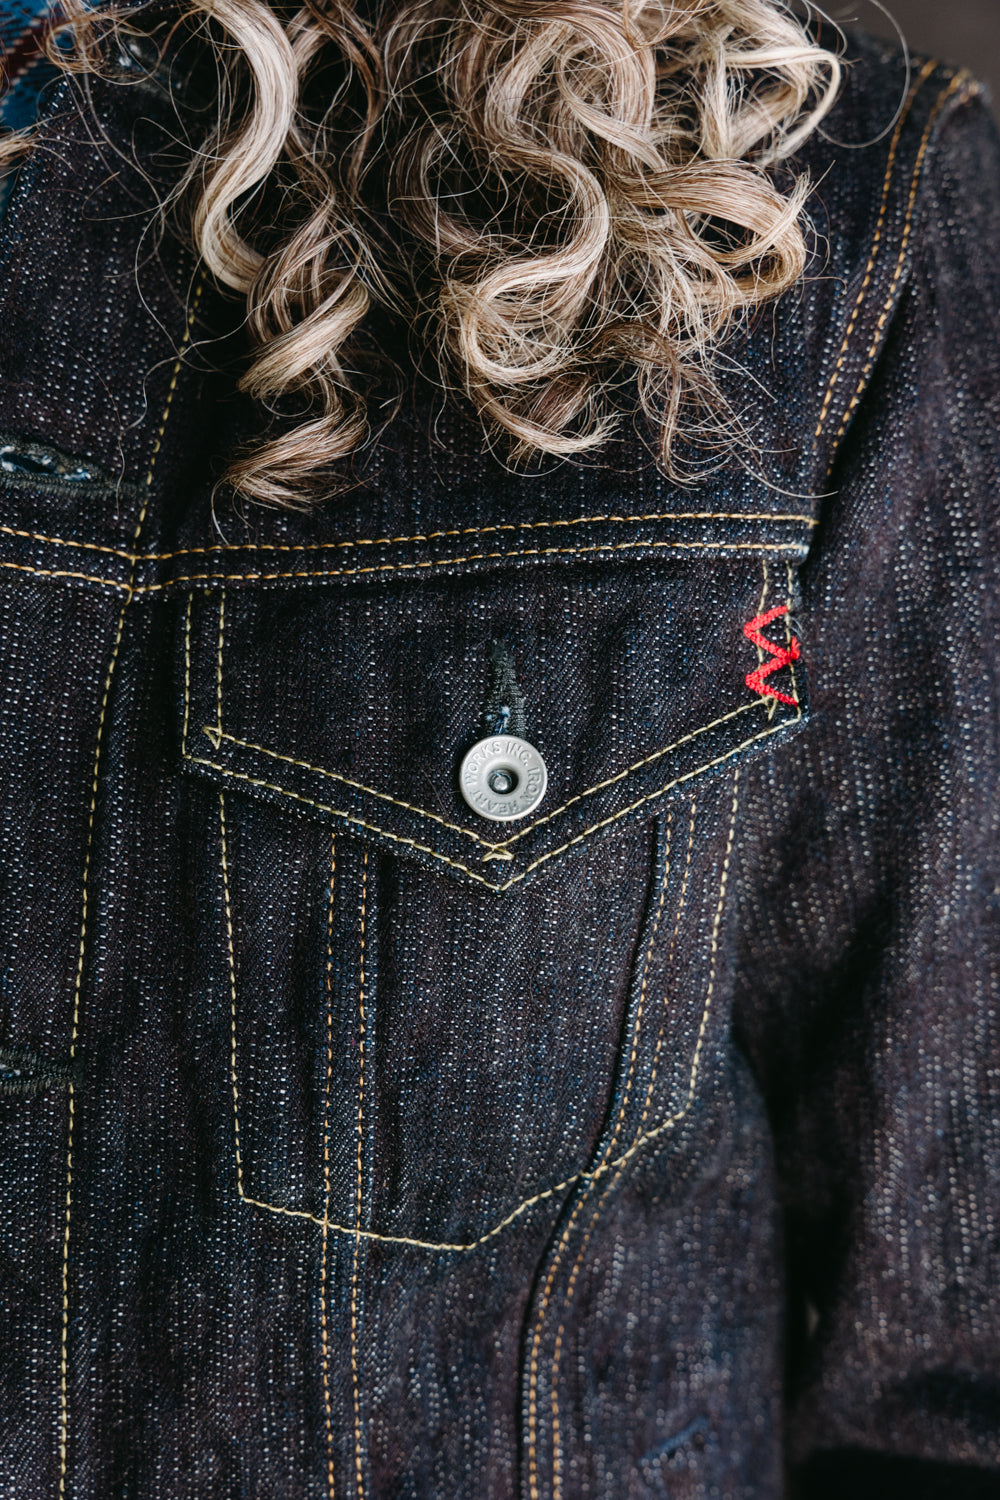 DEER Jeans - Limited Edition Japanese Redline Selvedge 16oz Denim! Okinawa  Japanese Redline Selvedge Denim 16oz Indigo Fabric: Premium Japanese  Selvedge Indigo Denim Weight: 16oz Zipper: YKK Button: Signature DEER  Stitching: Chain